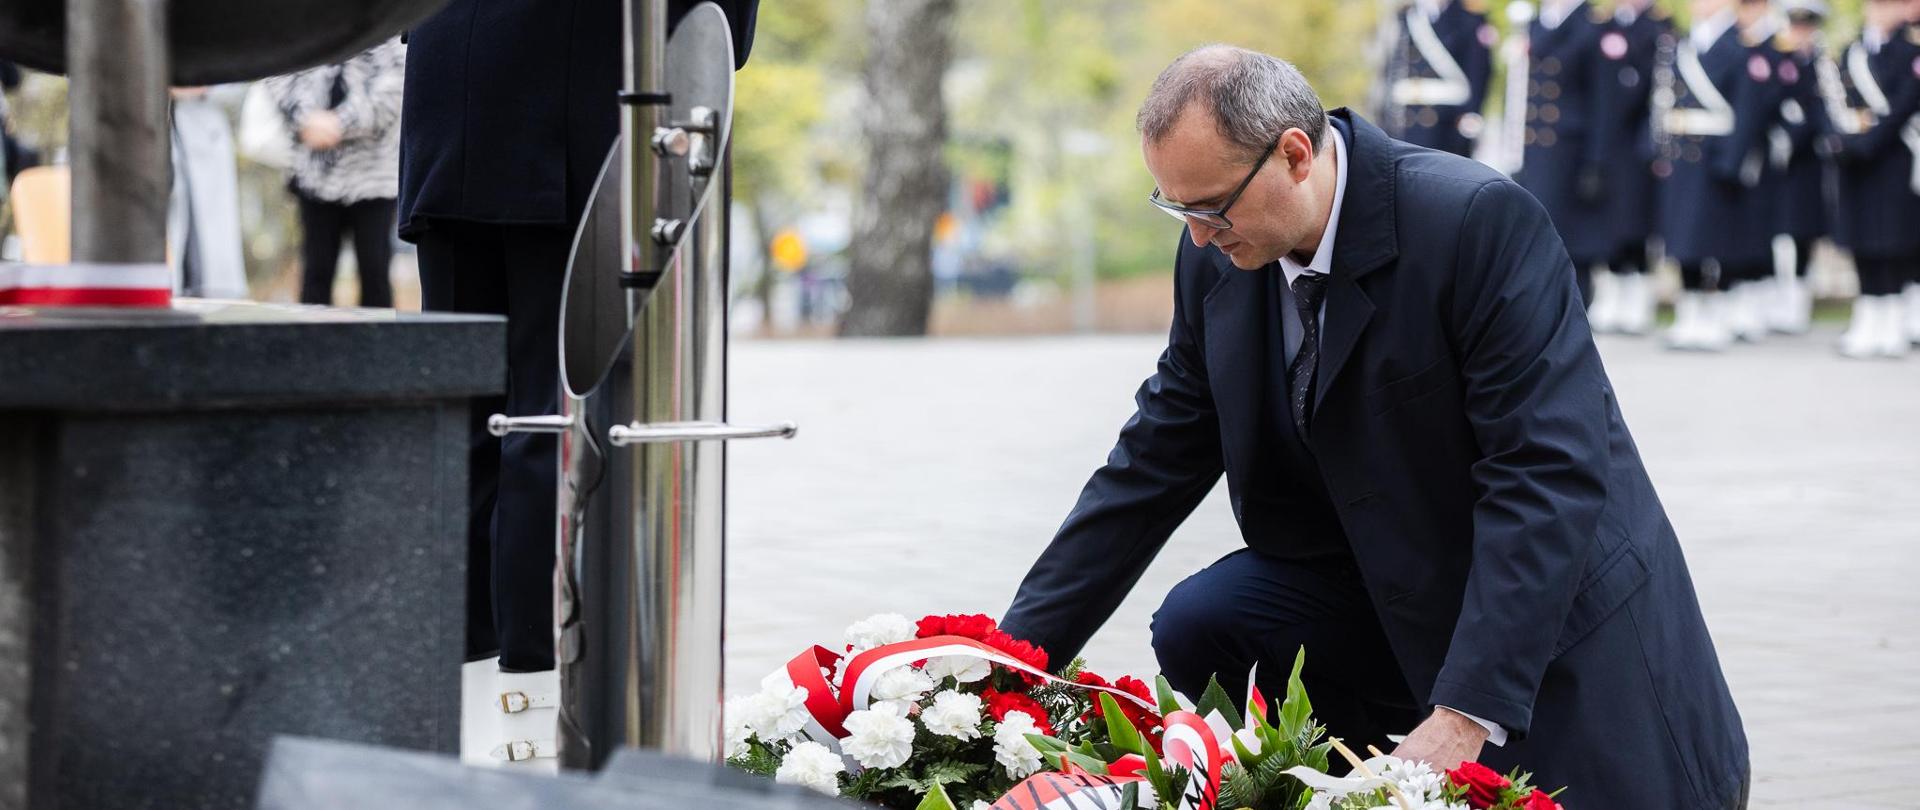 Mężczyzna kładzie wieniec z biało czerwoną szarfą przed pomnikiem Ofiar Zbrodni Katyńskiej